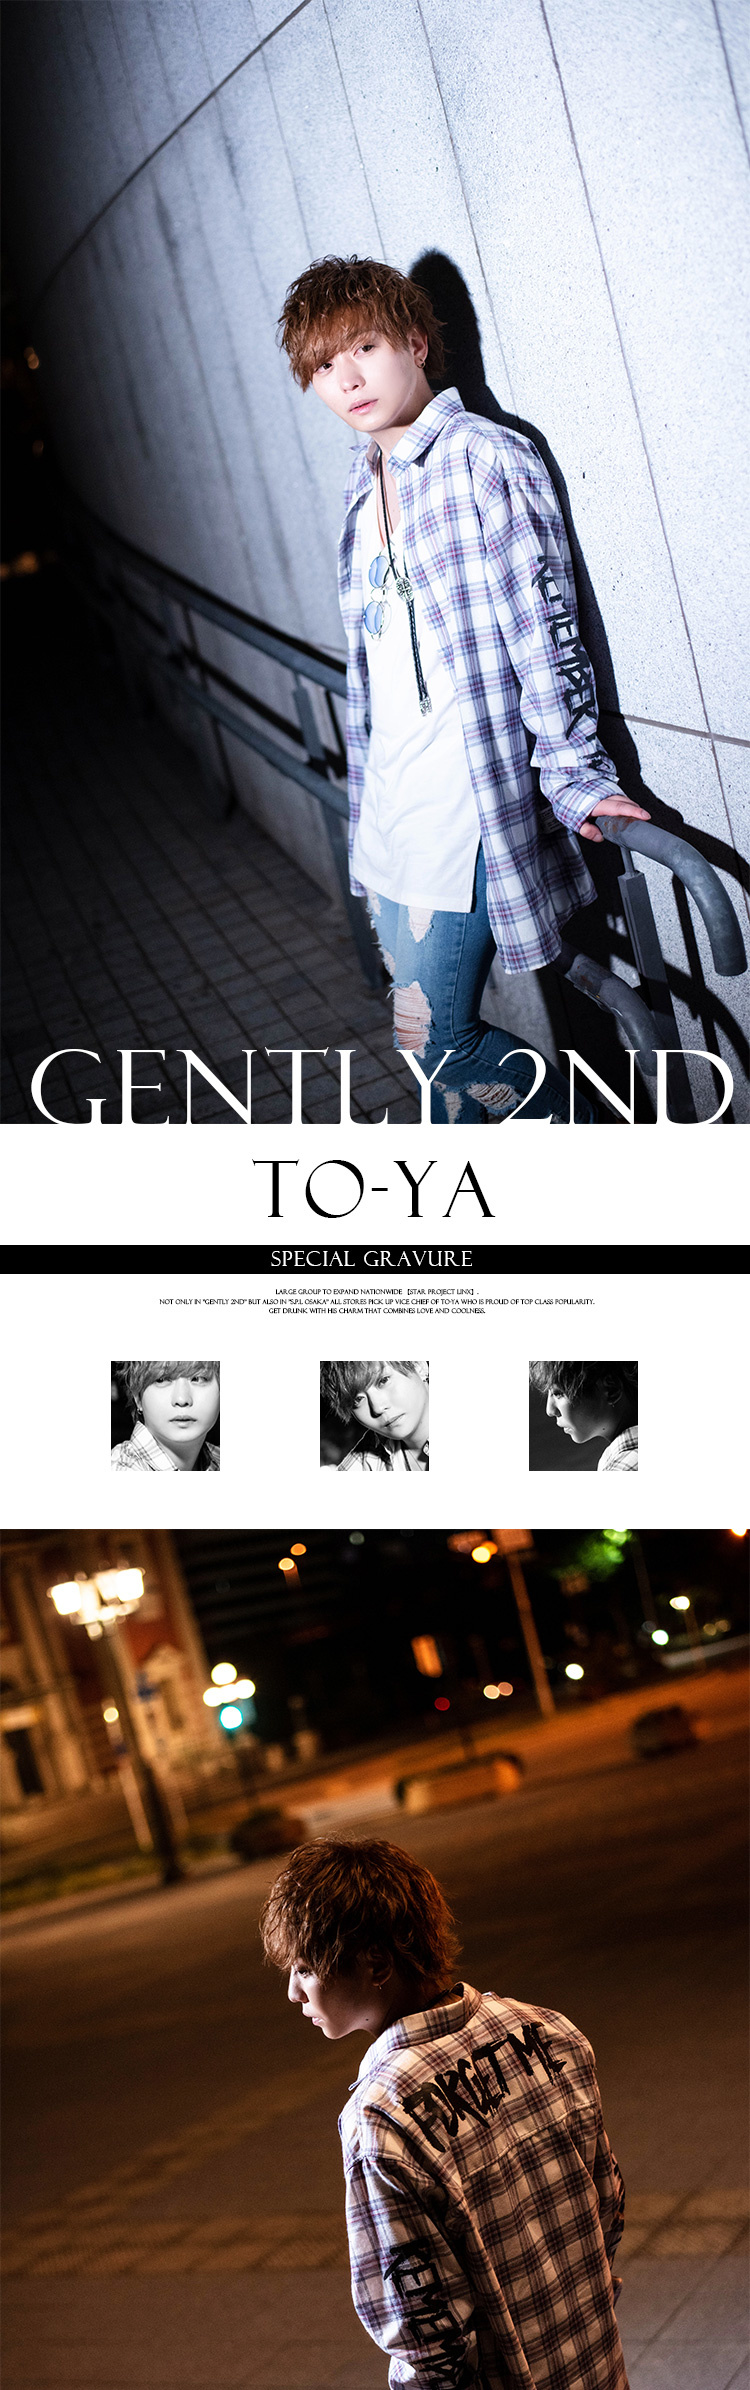 「GENTLY 2nd」No.1ホスト･TO-YAの魅力に迫る!!!